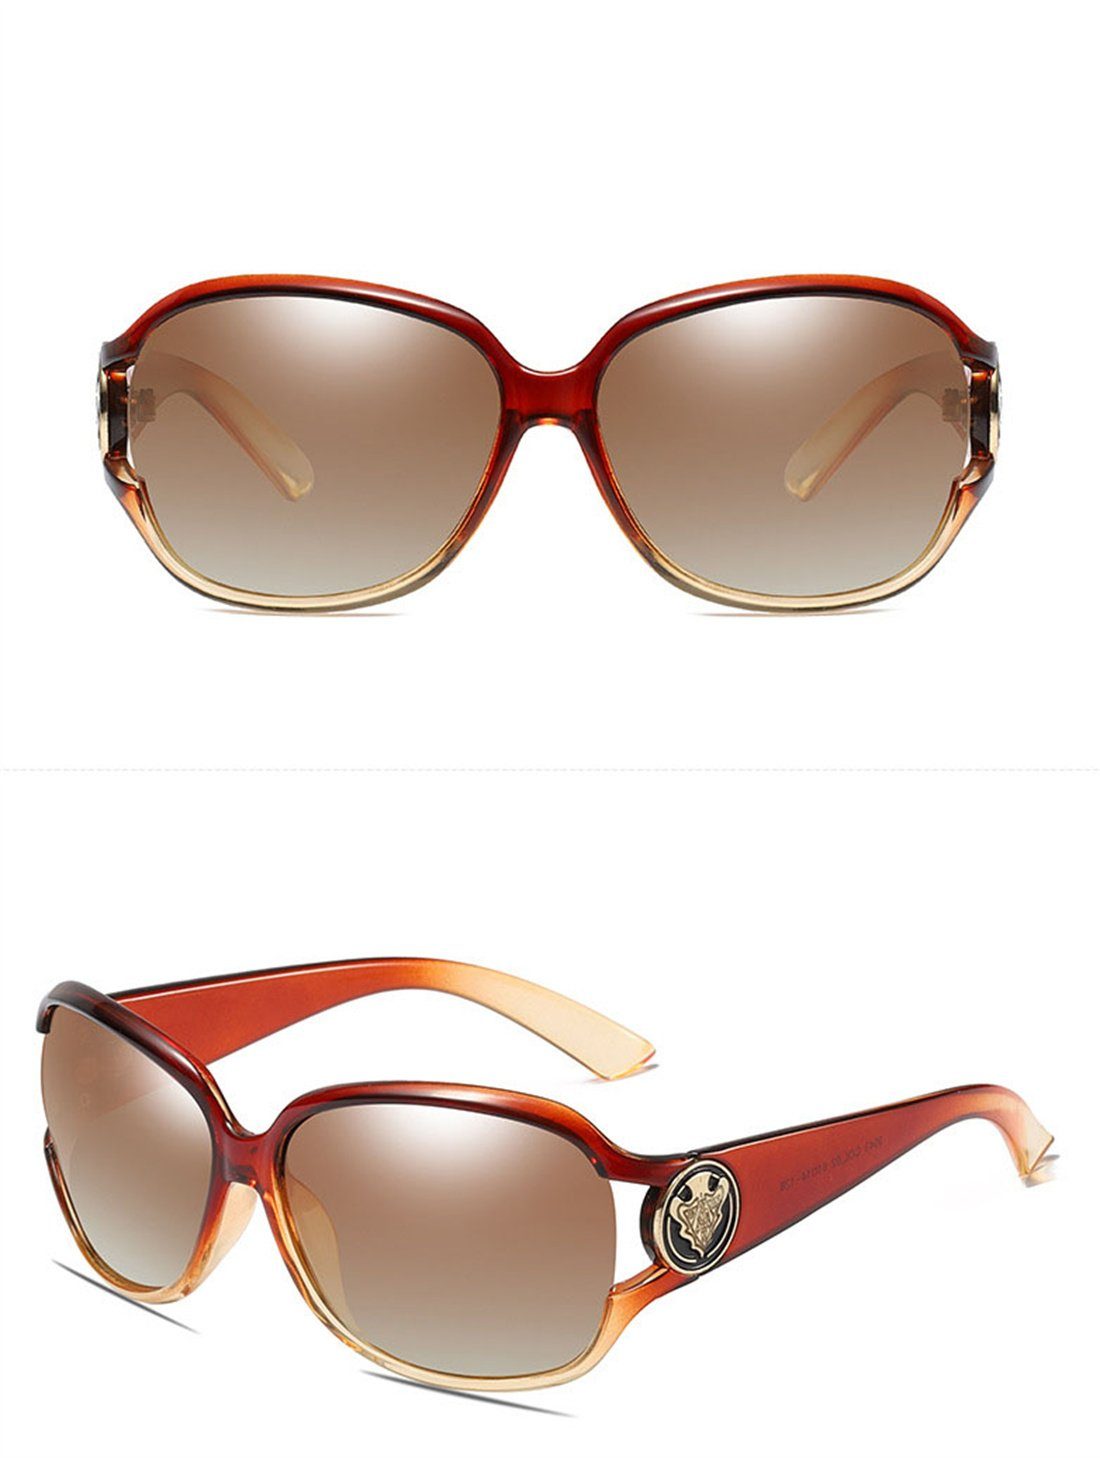 DÖRÖY Sonnenbrille Polarisierende Sonnenbrillen für Outdoor-Sonnenbrillen Frauen